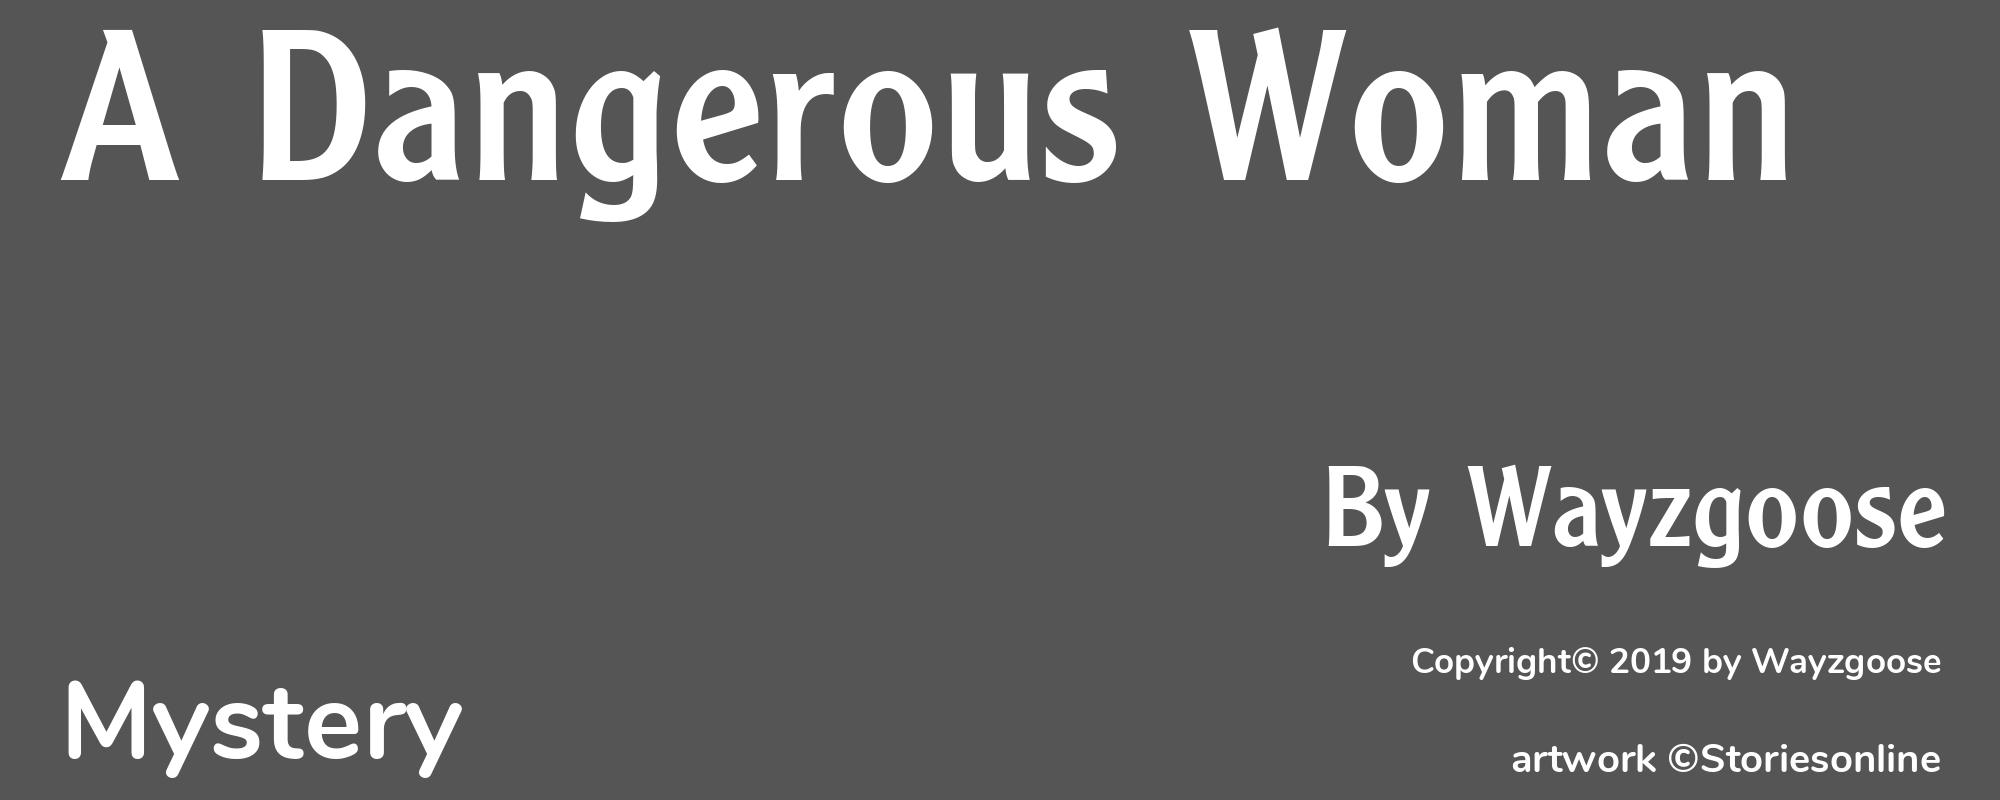 A Dangerous Woman - Cover